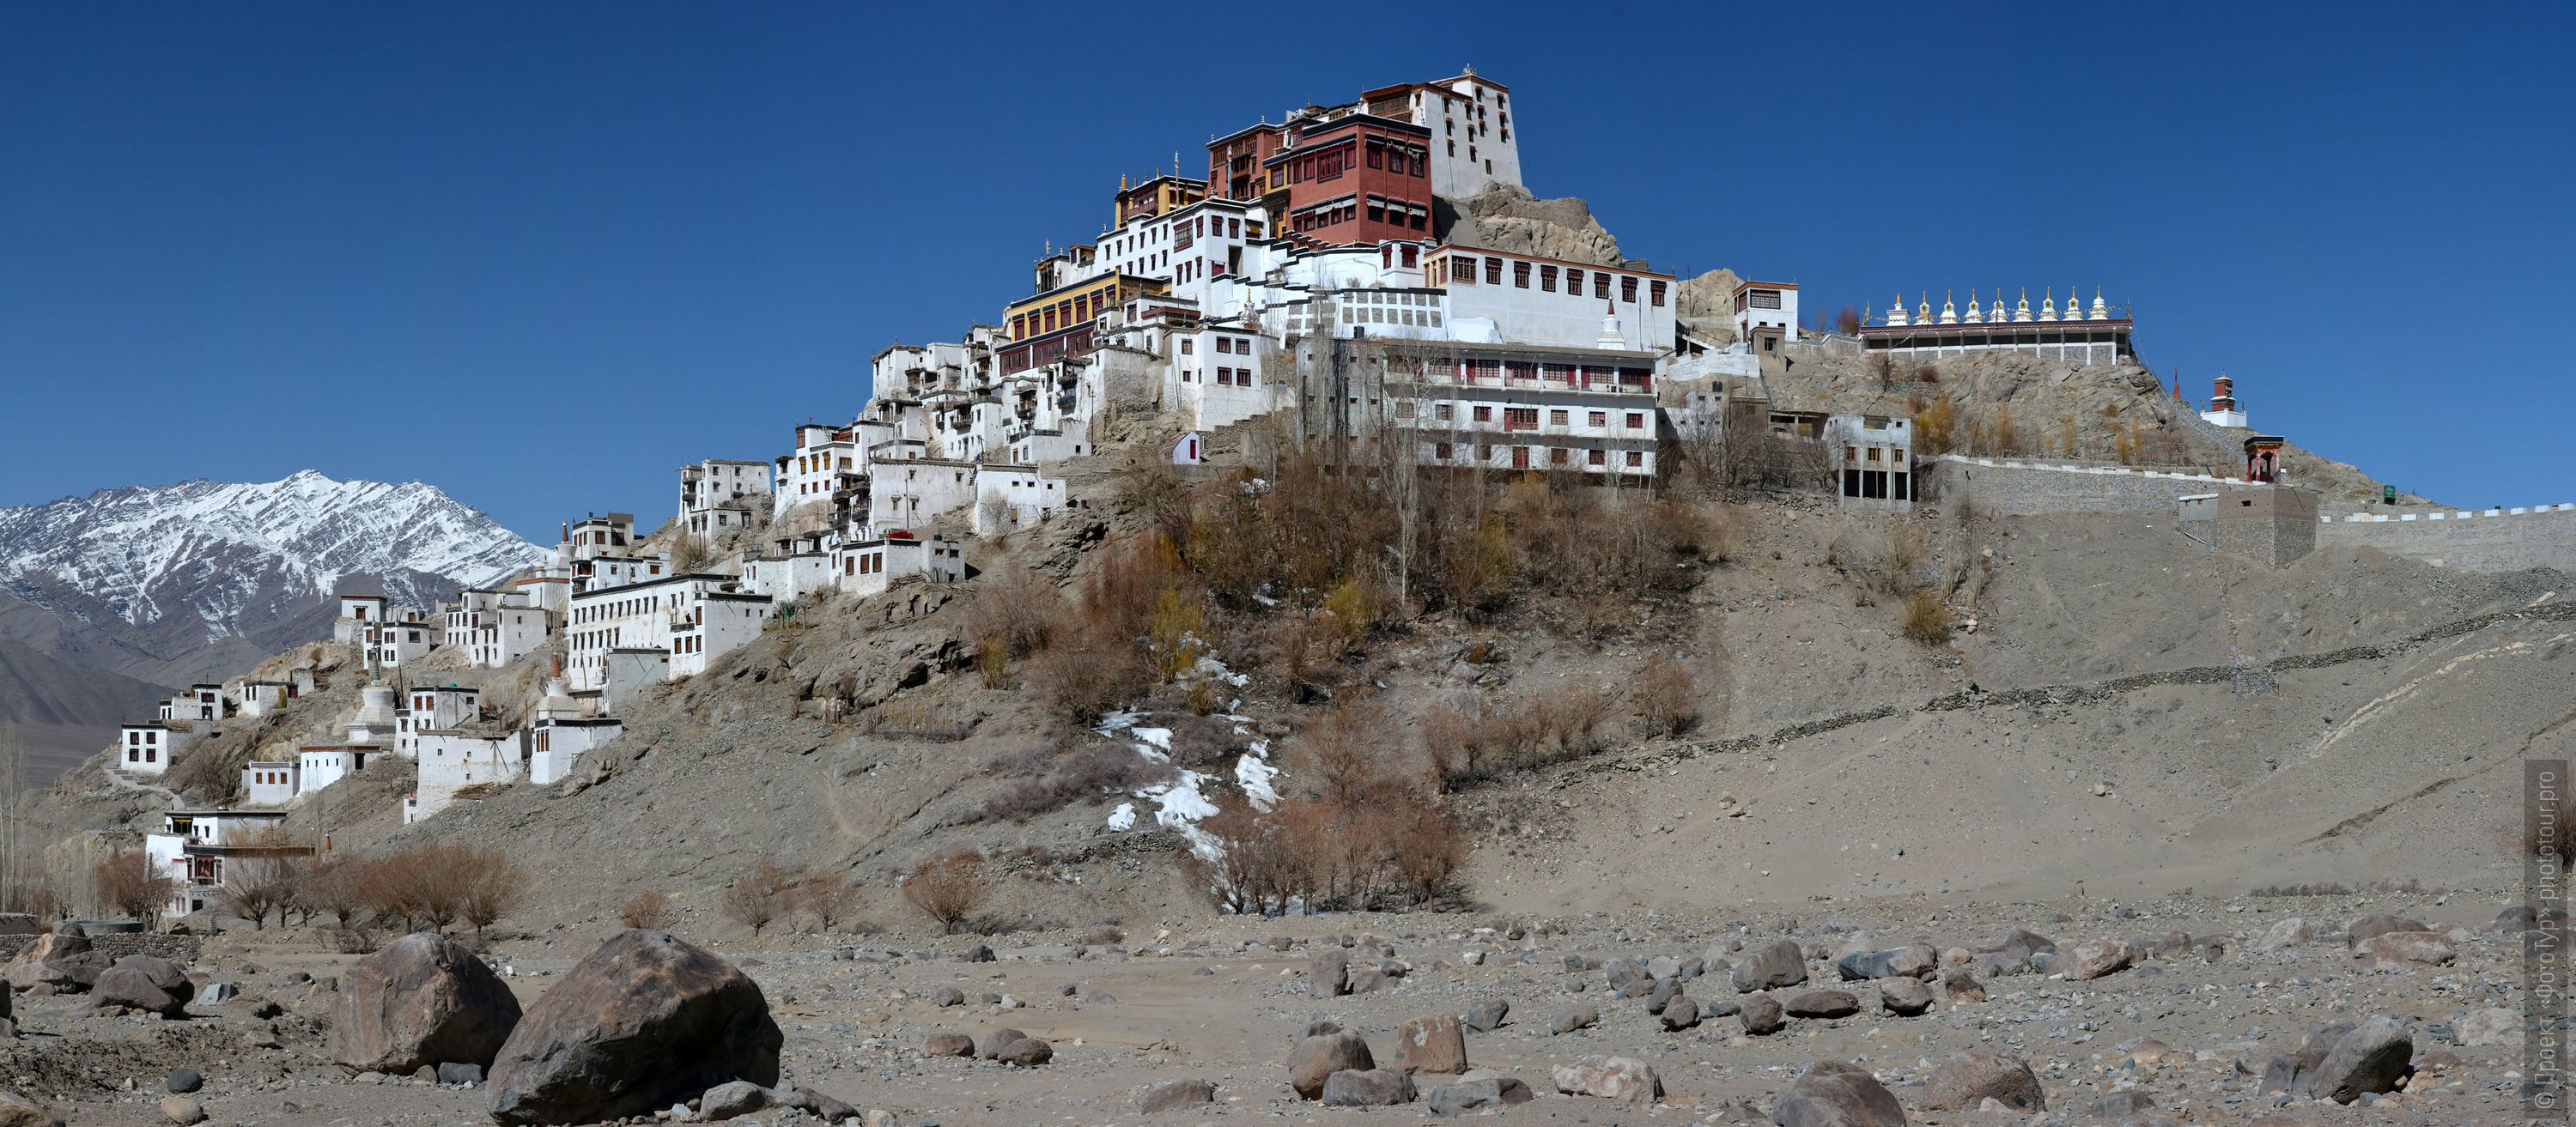 Буддийский монастырь Тиксей Гонпа, тур в Ладакх, 2014г.